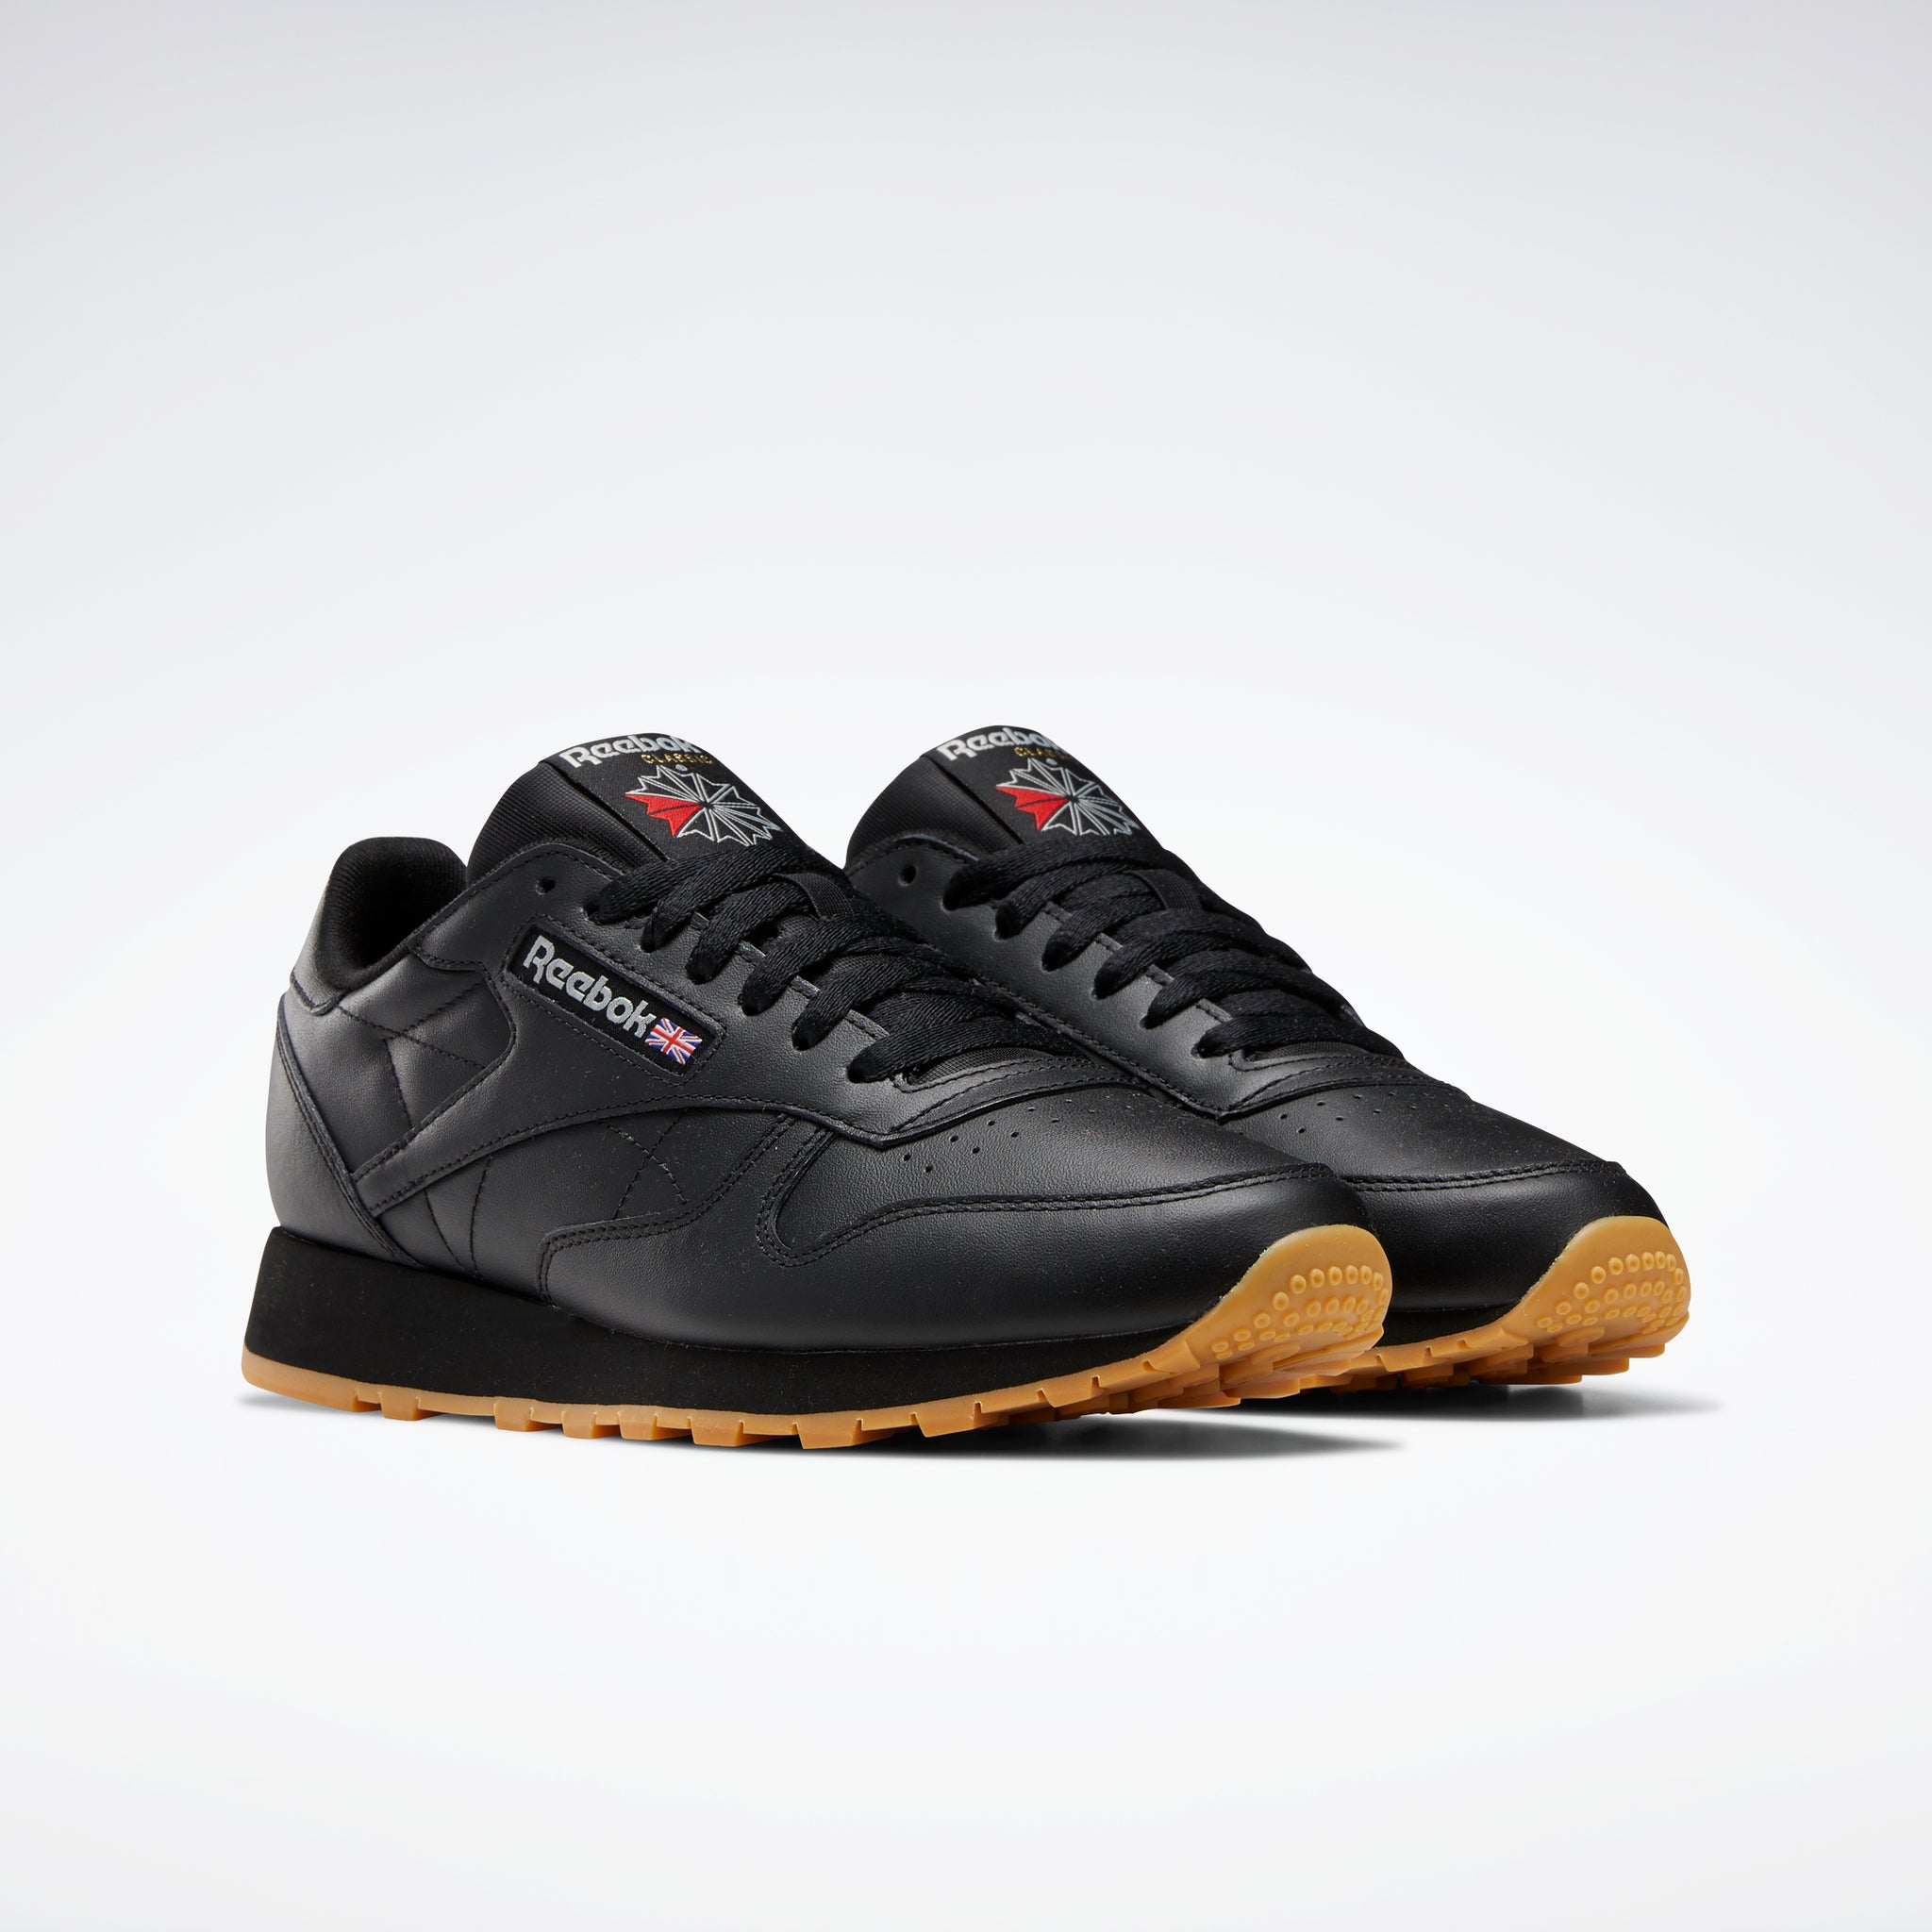 Reebok Footwear Men Classic Leather Shoes Cblack/Pugry5/Rbkg03 – Reebok ...